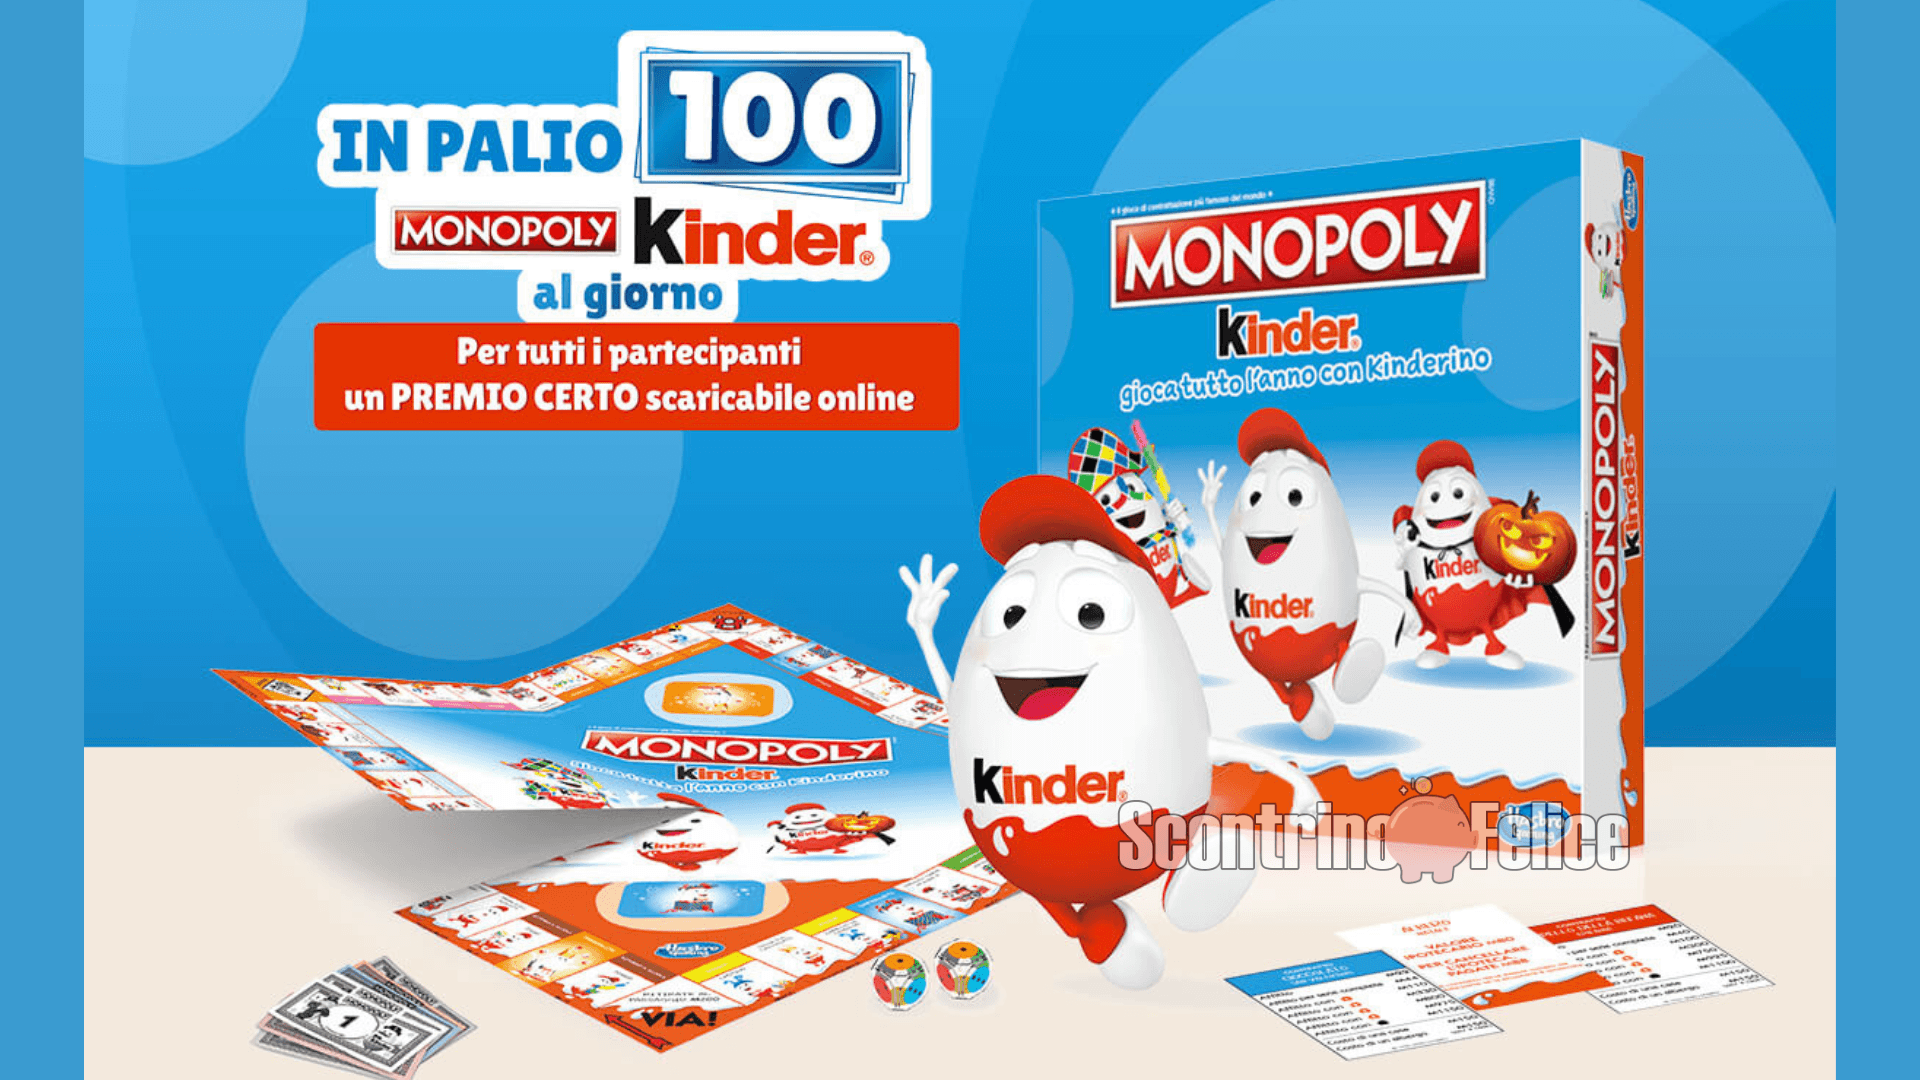 Concorso Kinder: in palio 100 Monopoly ogni giorno! 6